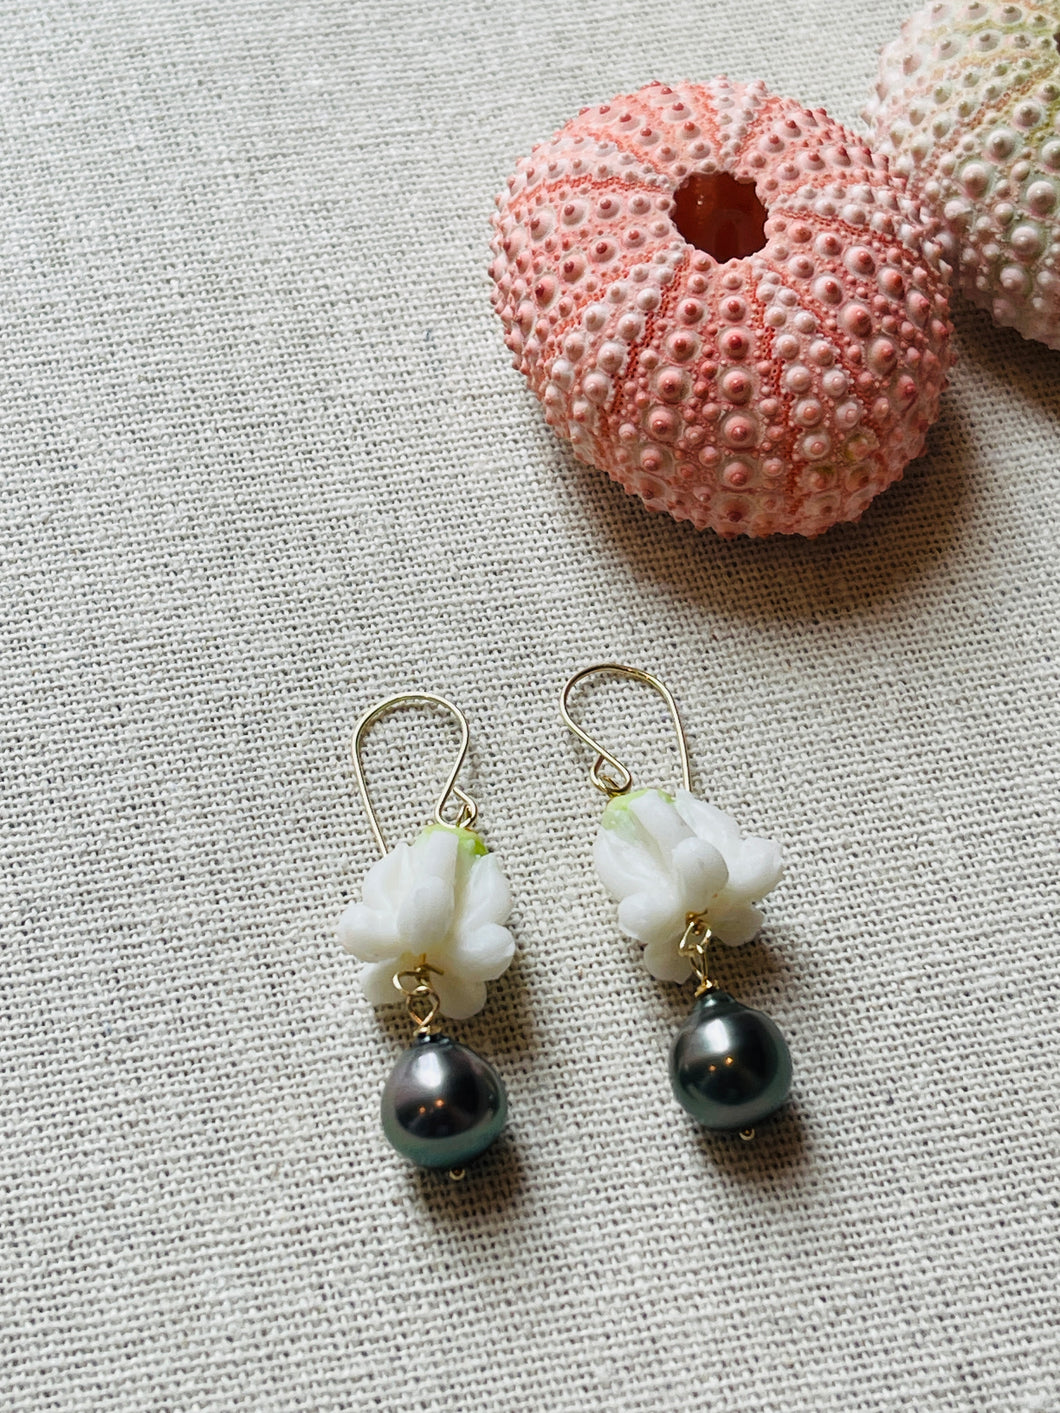 Crown Flower earrings